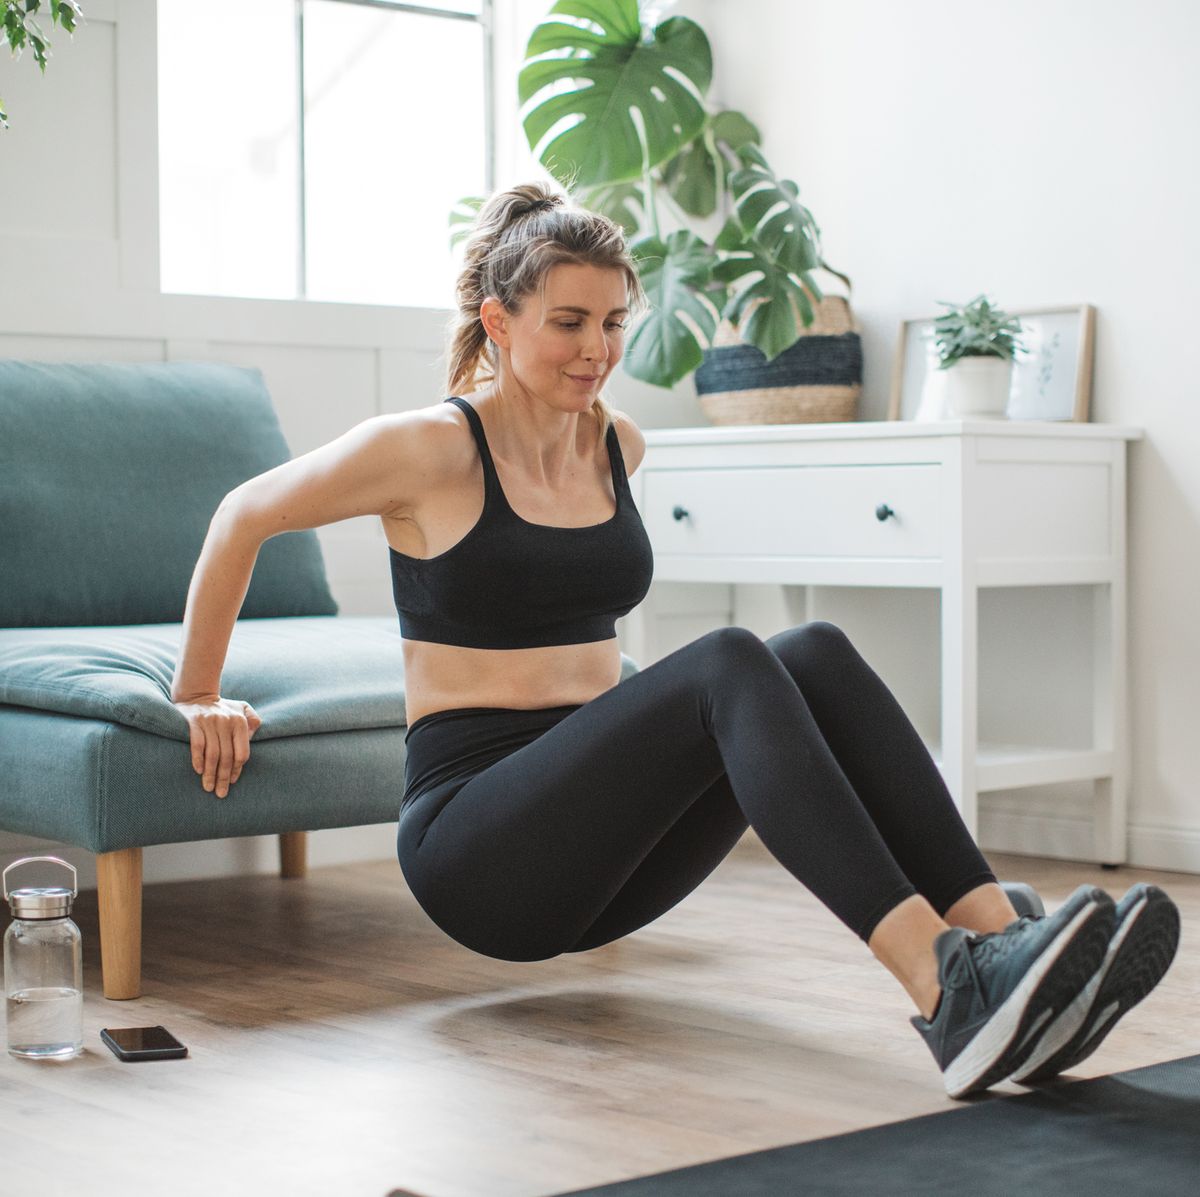 8 ejercicios para fortalecer glúteos y abdomen en casa rápidamente